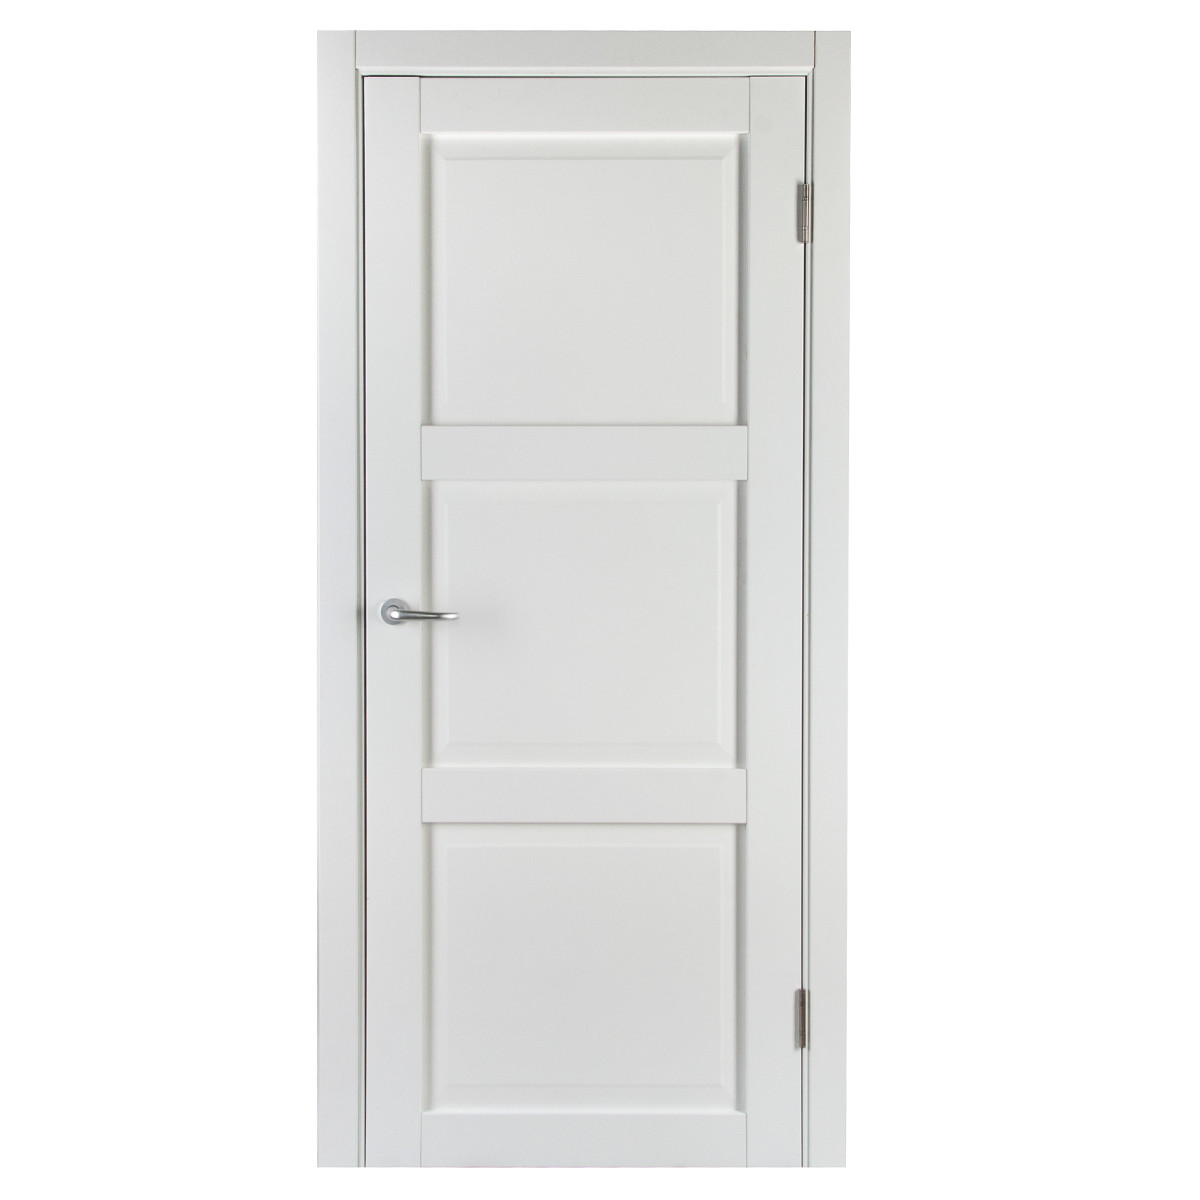 Дверь межкомнатная с фурнитурой Адажио 80х200 см, Hardflex, цвет белый